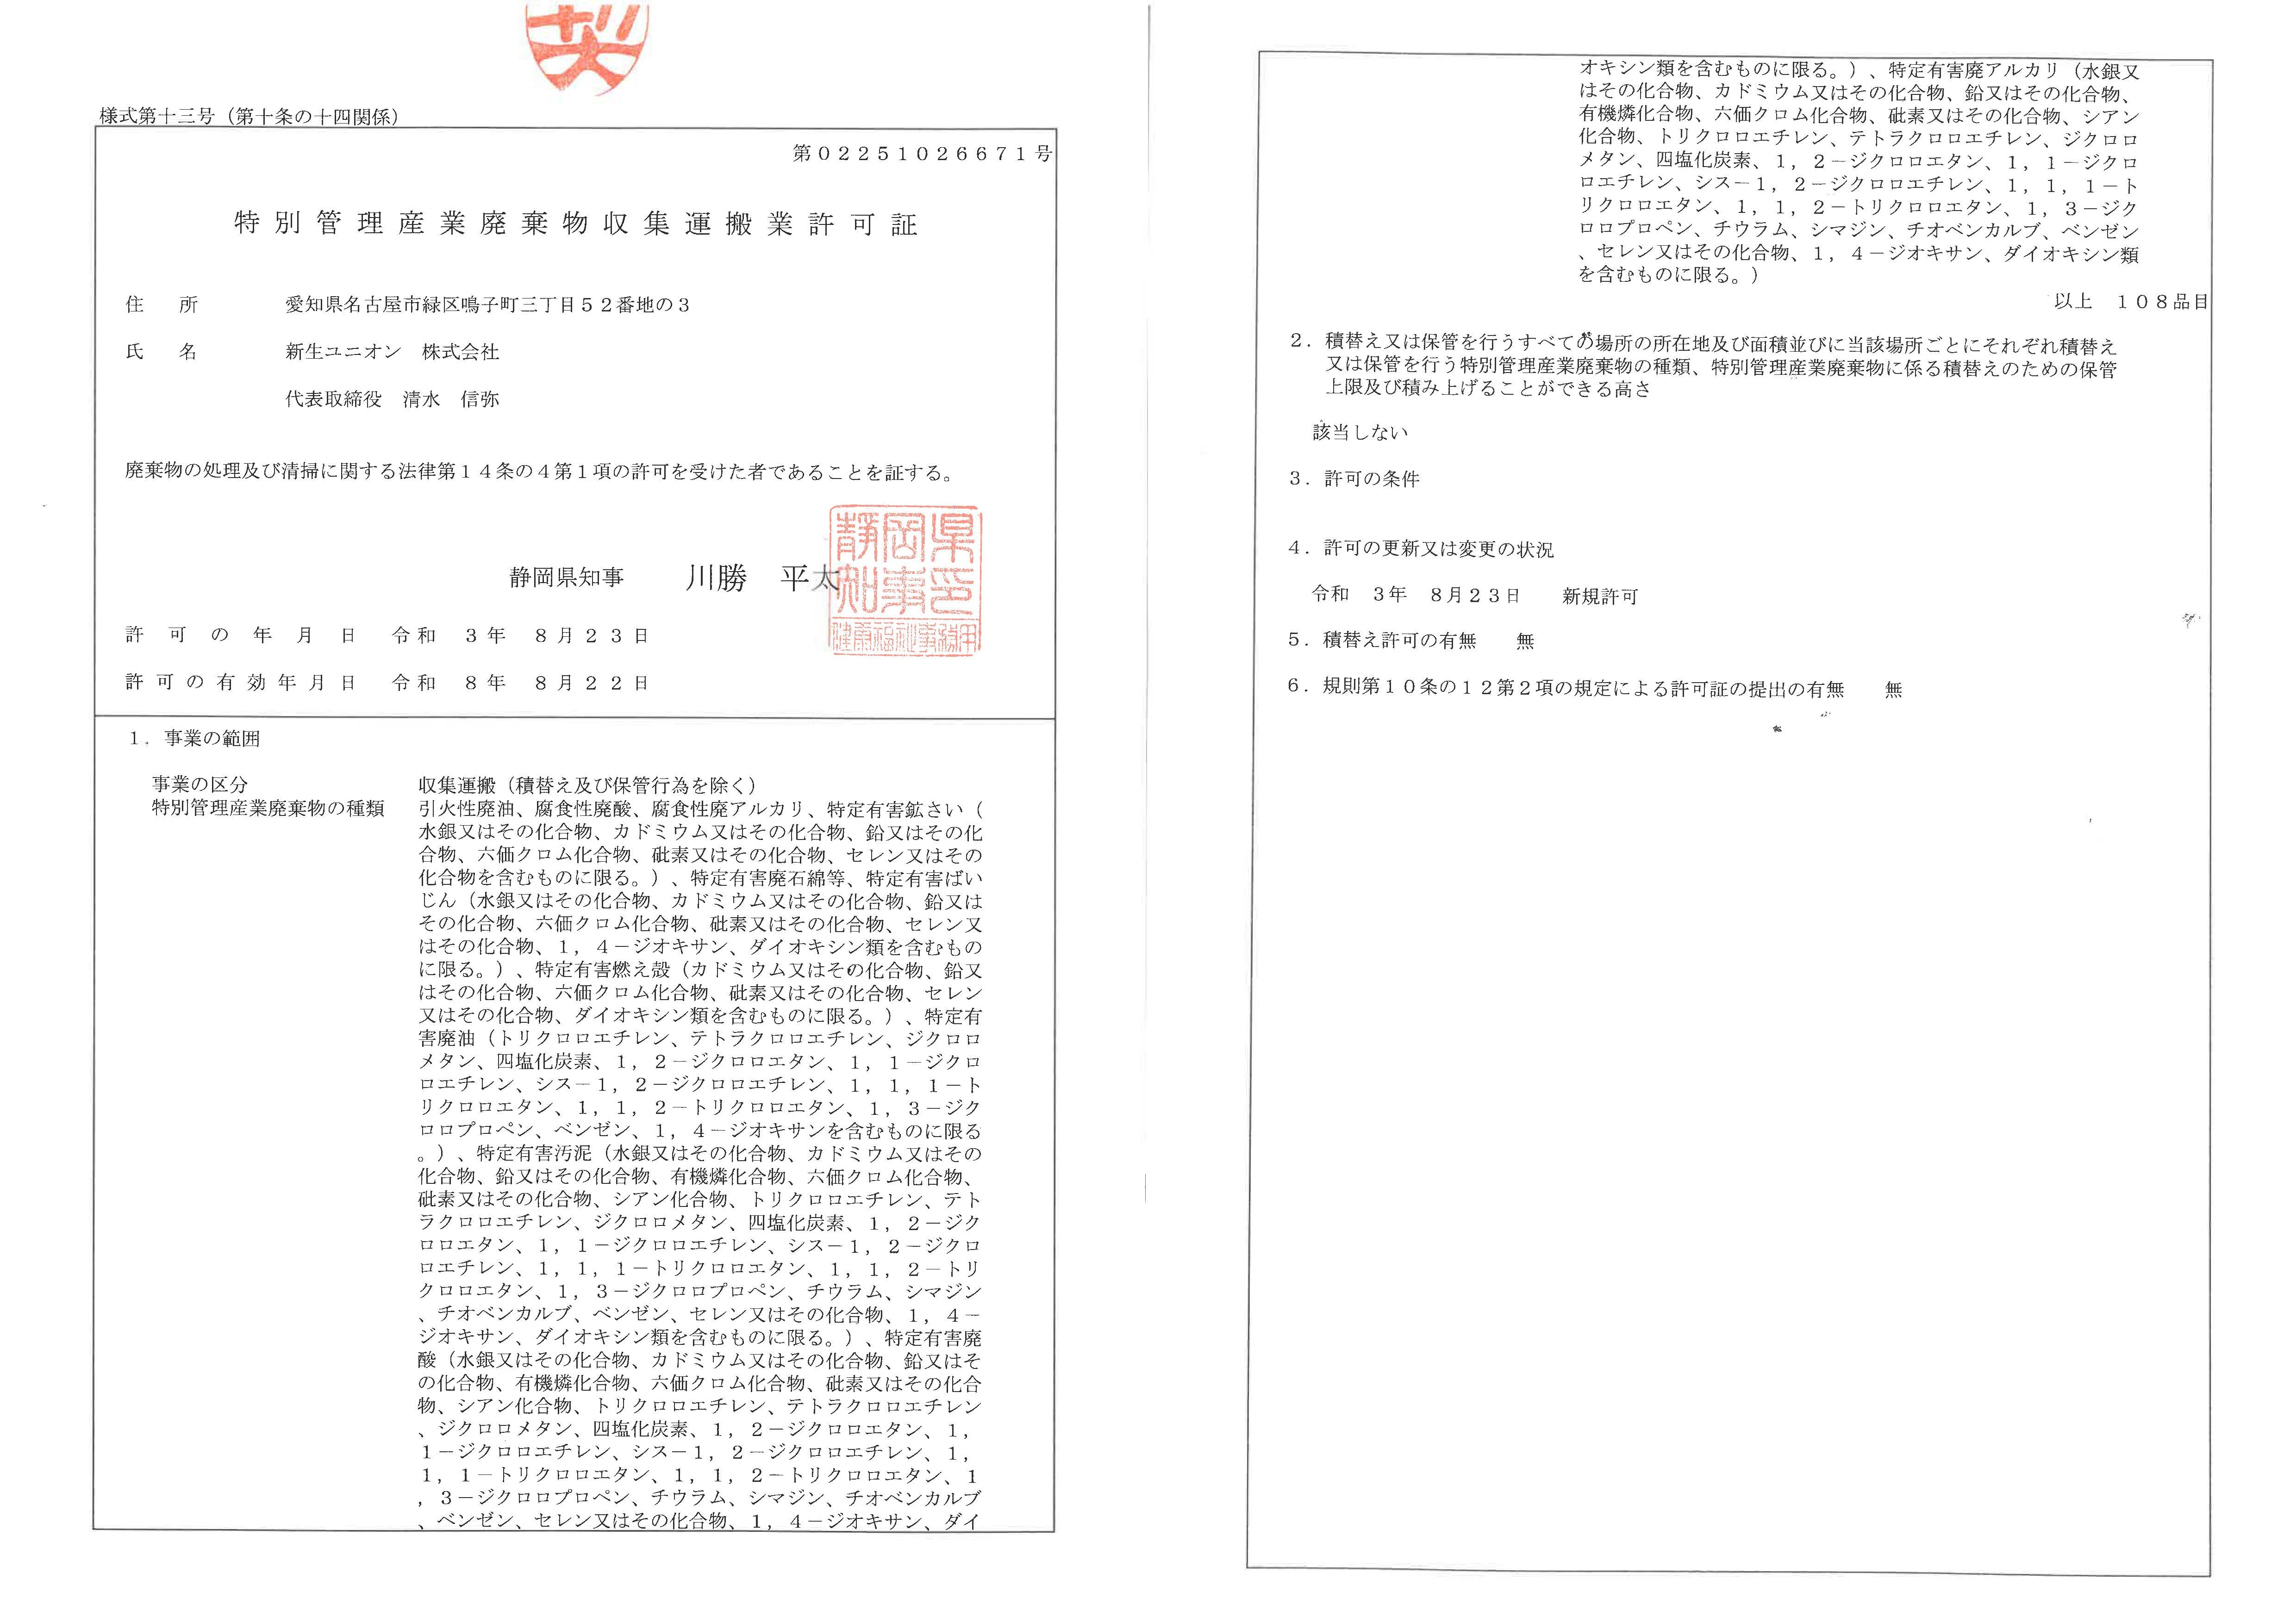 静岡県特別産業廃棄物収集運搬業許可証